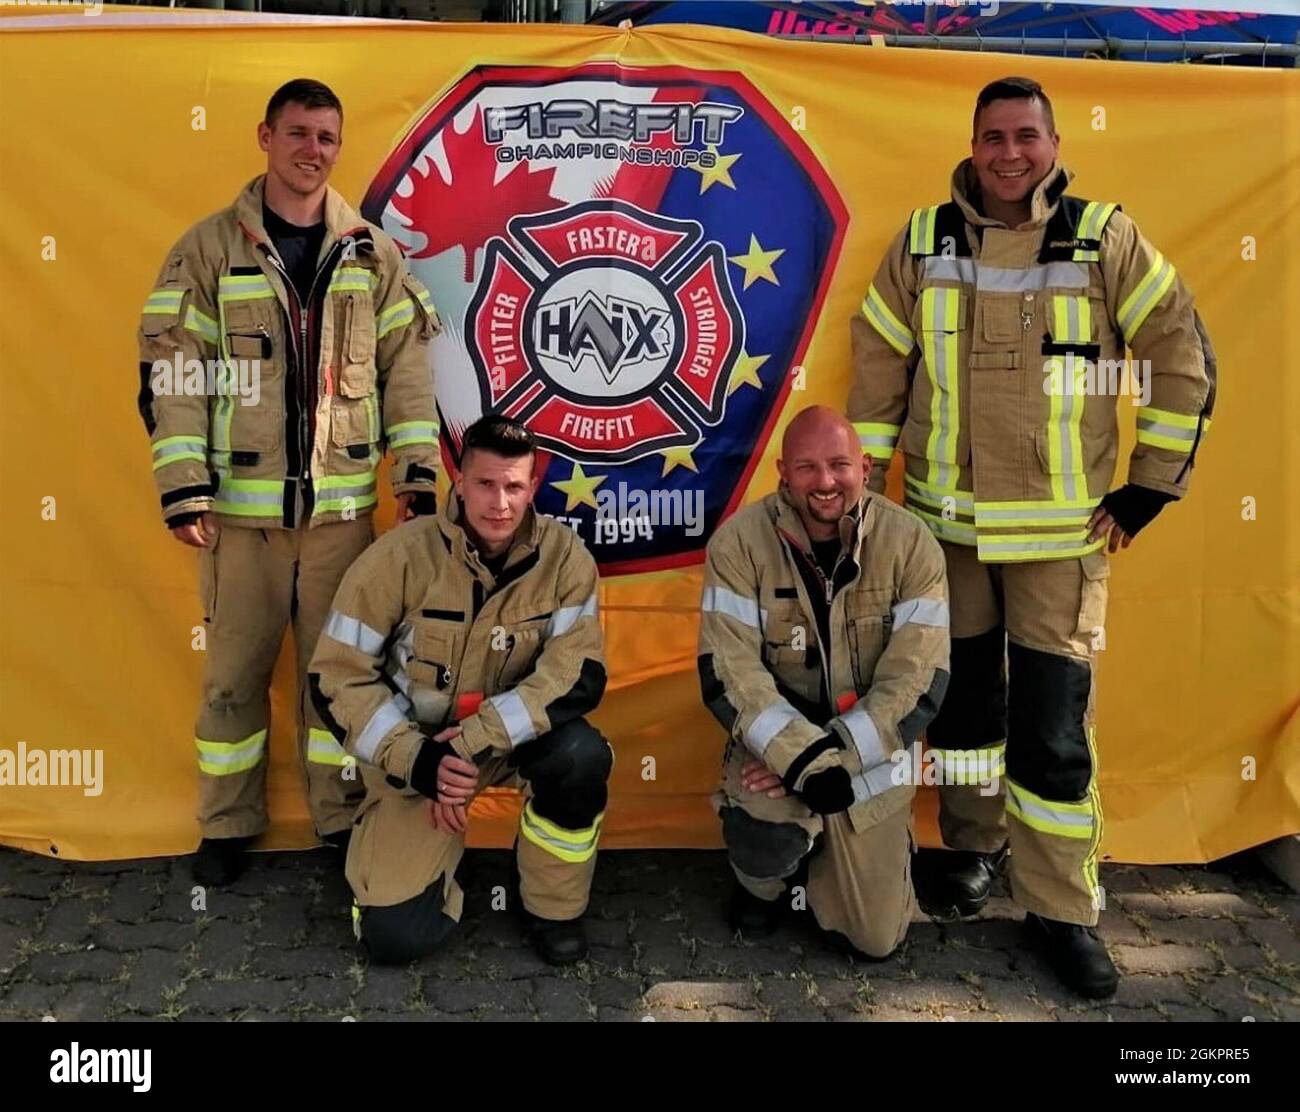 Cuatro bomberos del Ejército de los Estados Unidos Garrison Ansbach de las  estaciones de bomberos de Katterbach e Illesheim participaron en la carrera  de clasificación para el Desafío Fireit Europe en Hannover,